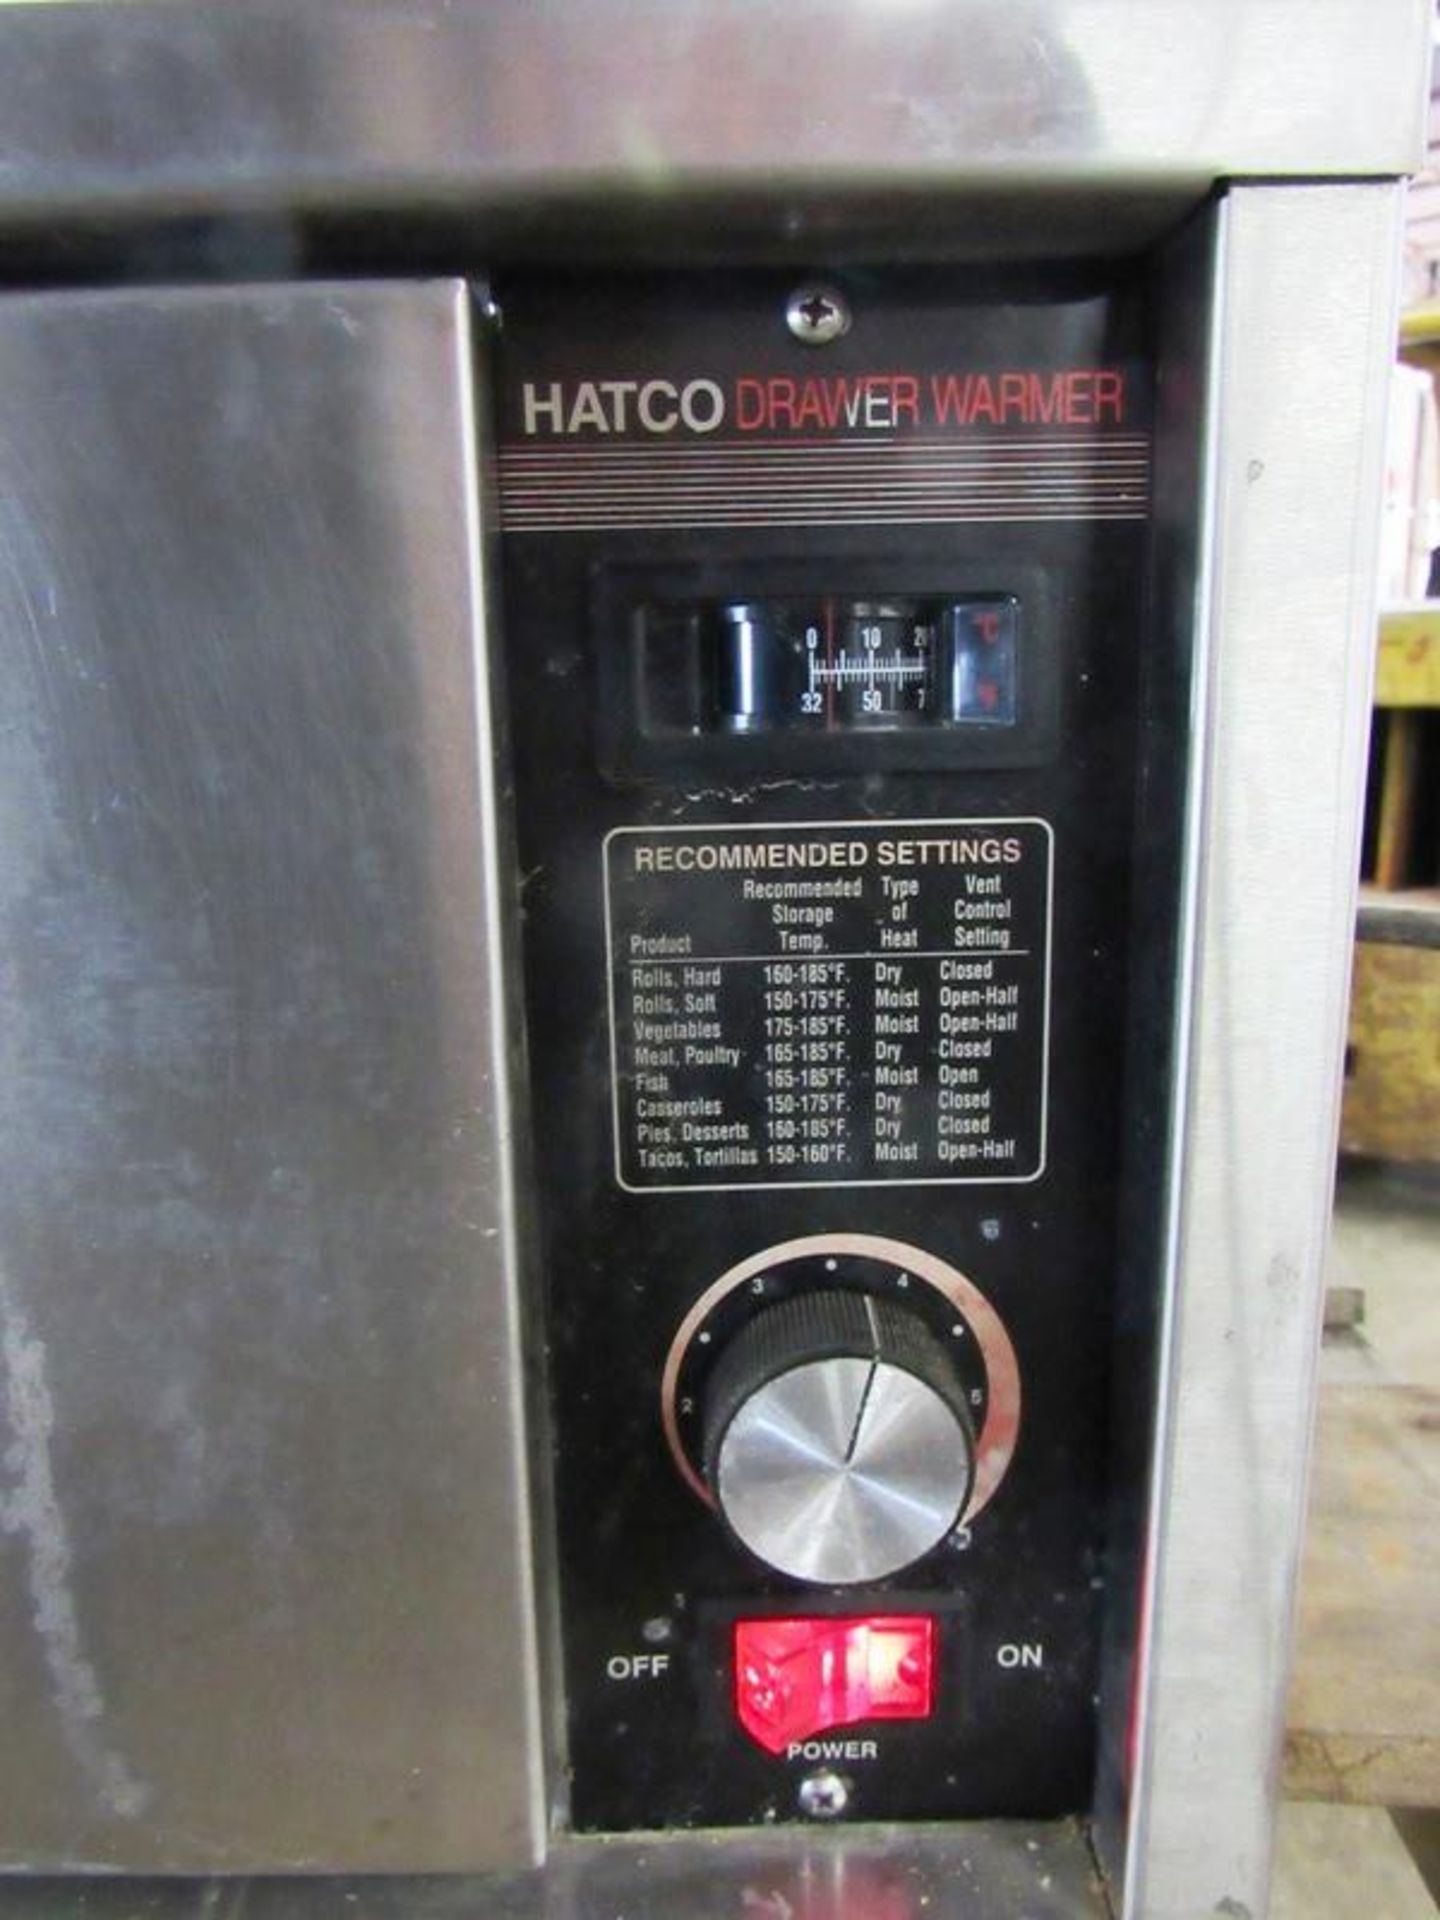 Hatco Mdl. HDW-1 Drawer Warmer, Ser. #7054899507, 120 volts, lit up - Bild 3 aus 3